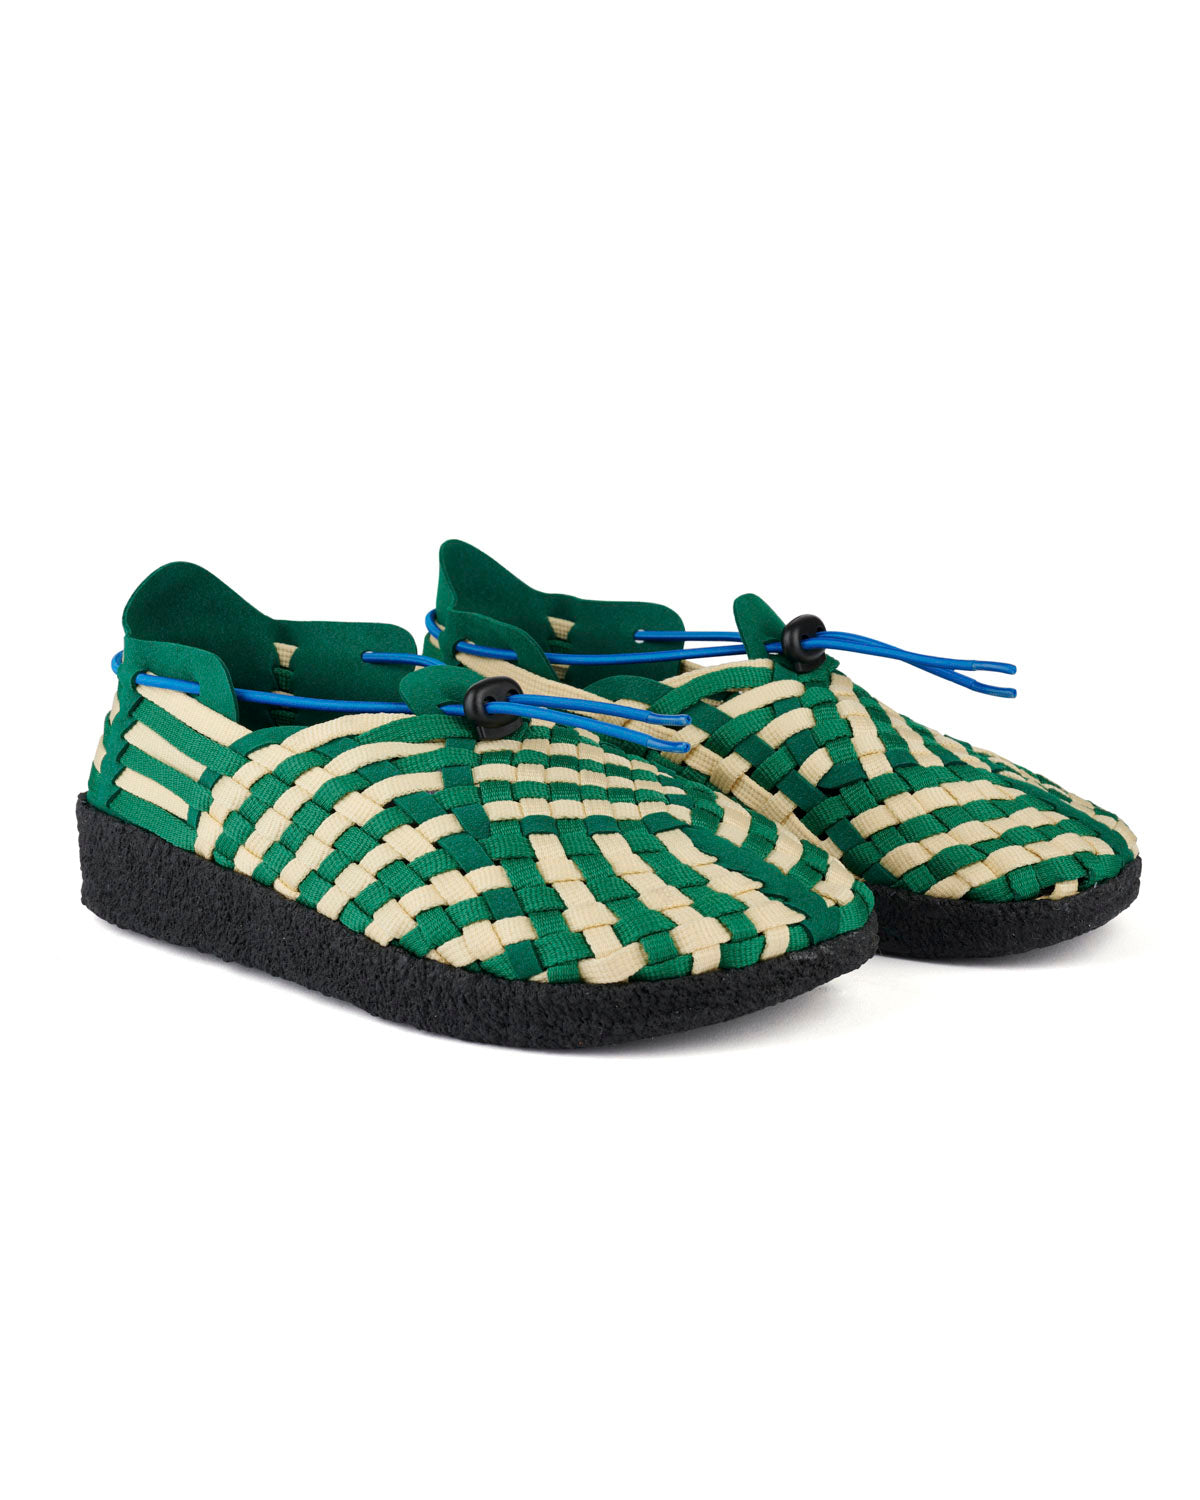 Women's Malibu Latigo Woven Shoe - Green/Natural/Black 2